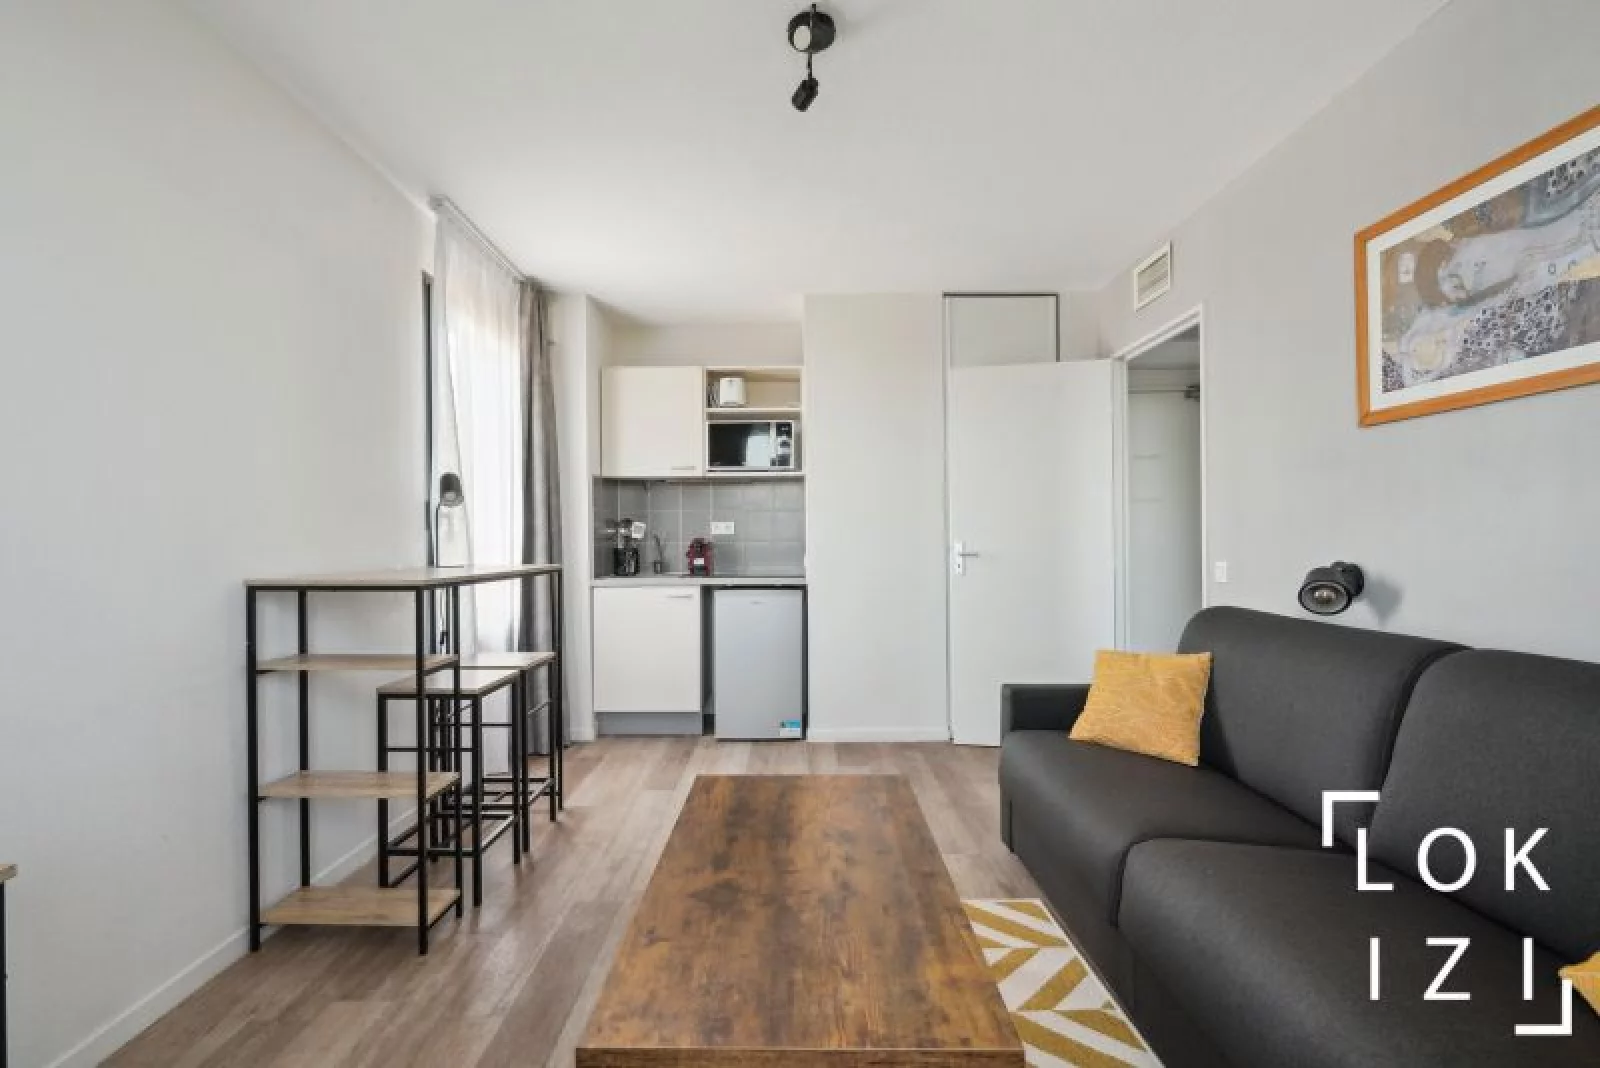 Location appartement meublé 2 pièces de 31m² (Avignon - gare TGV)